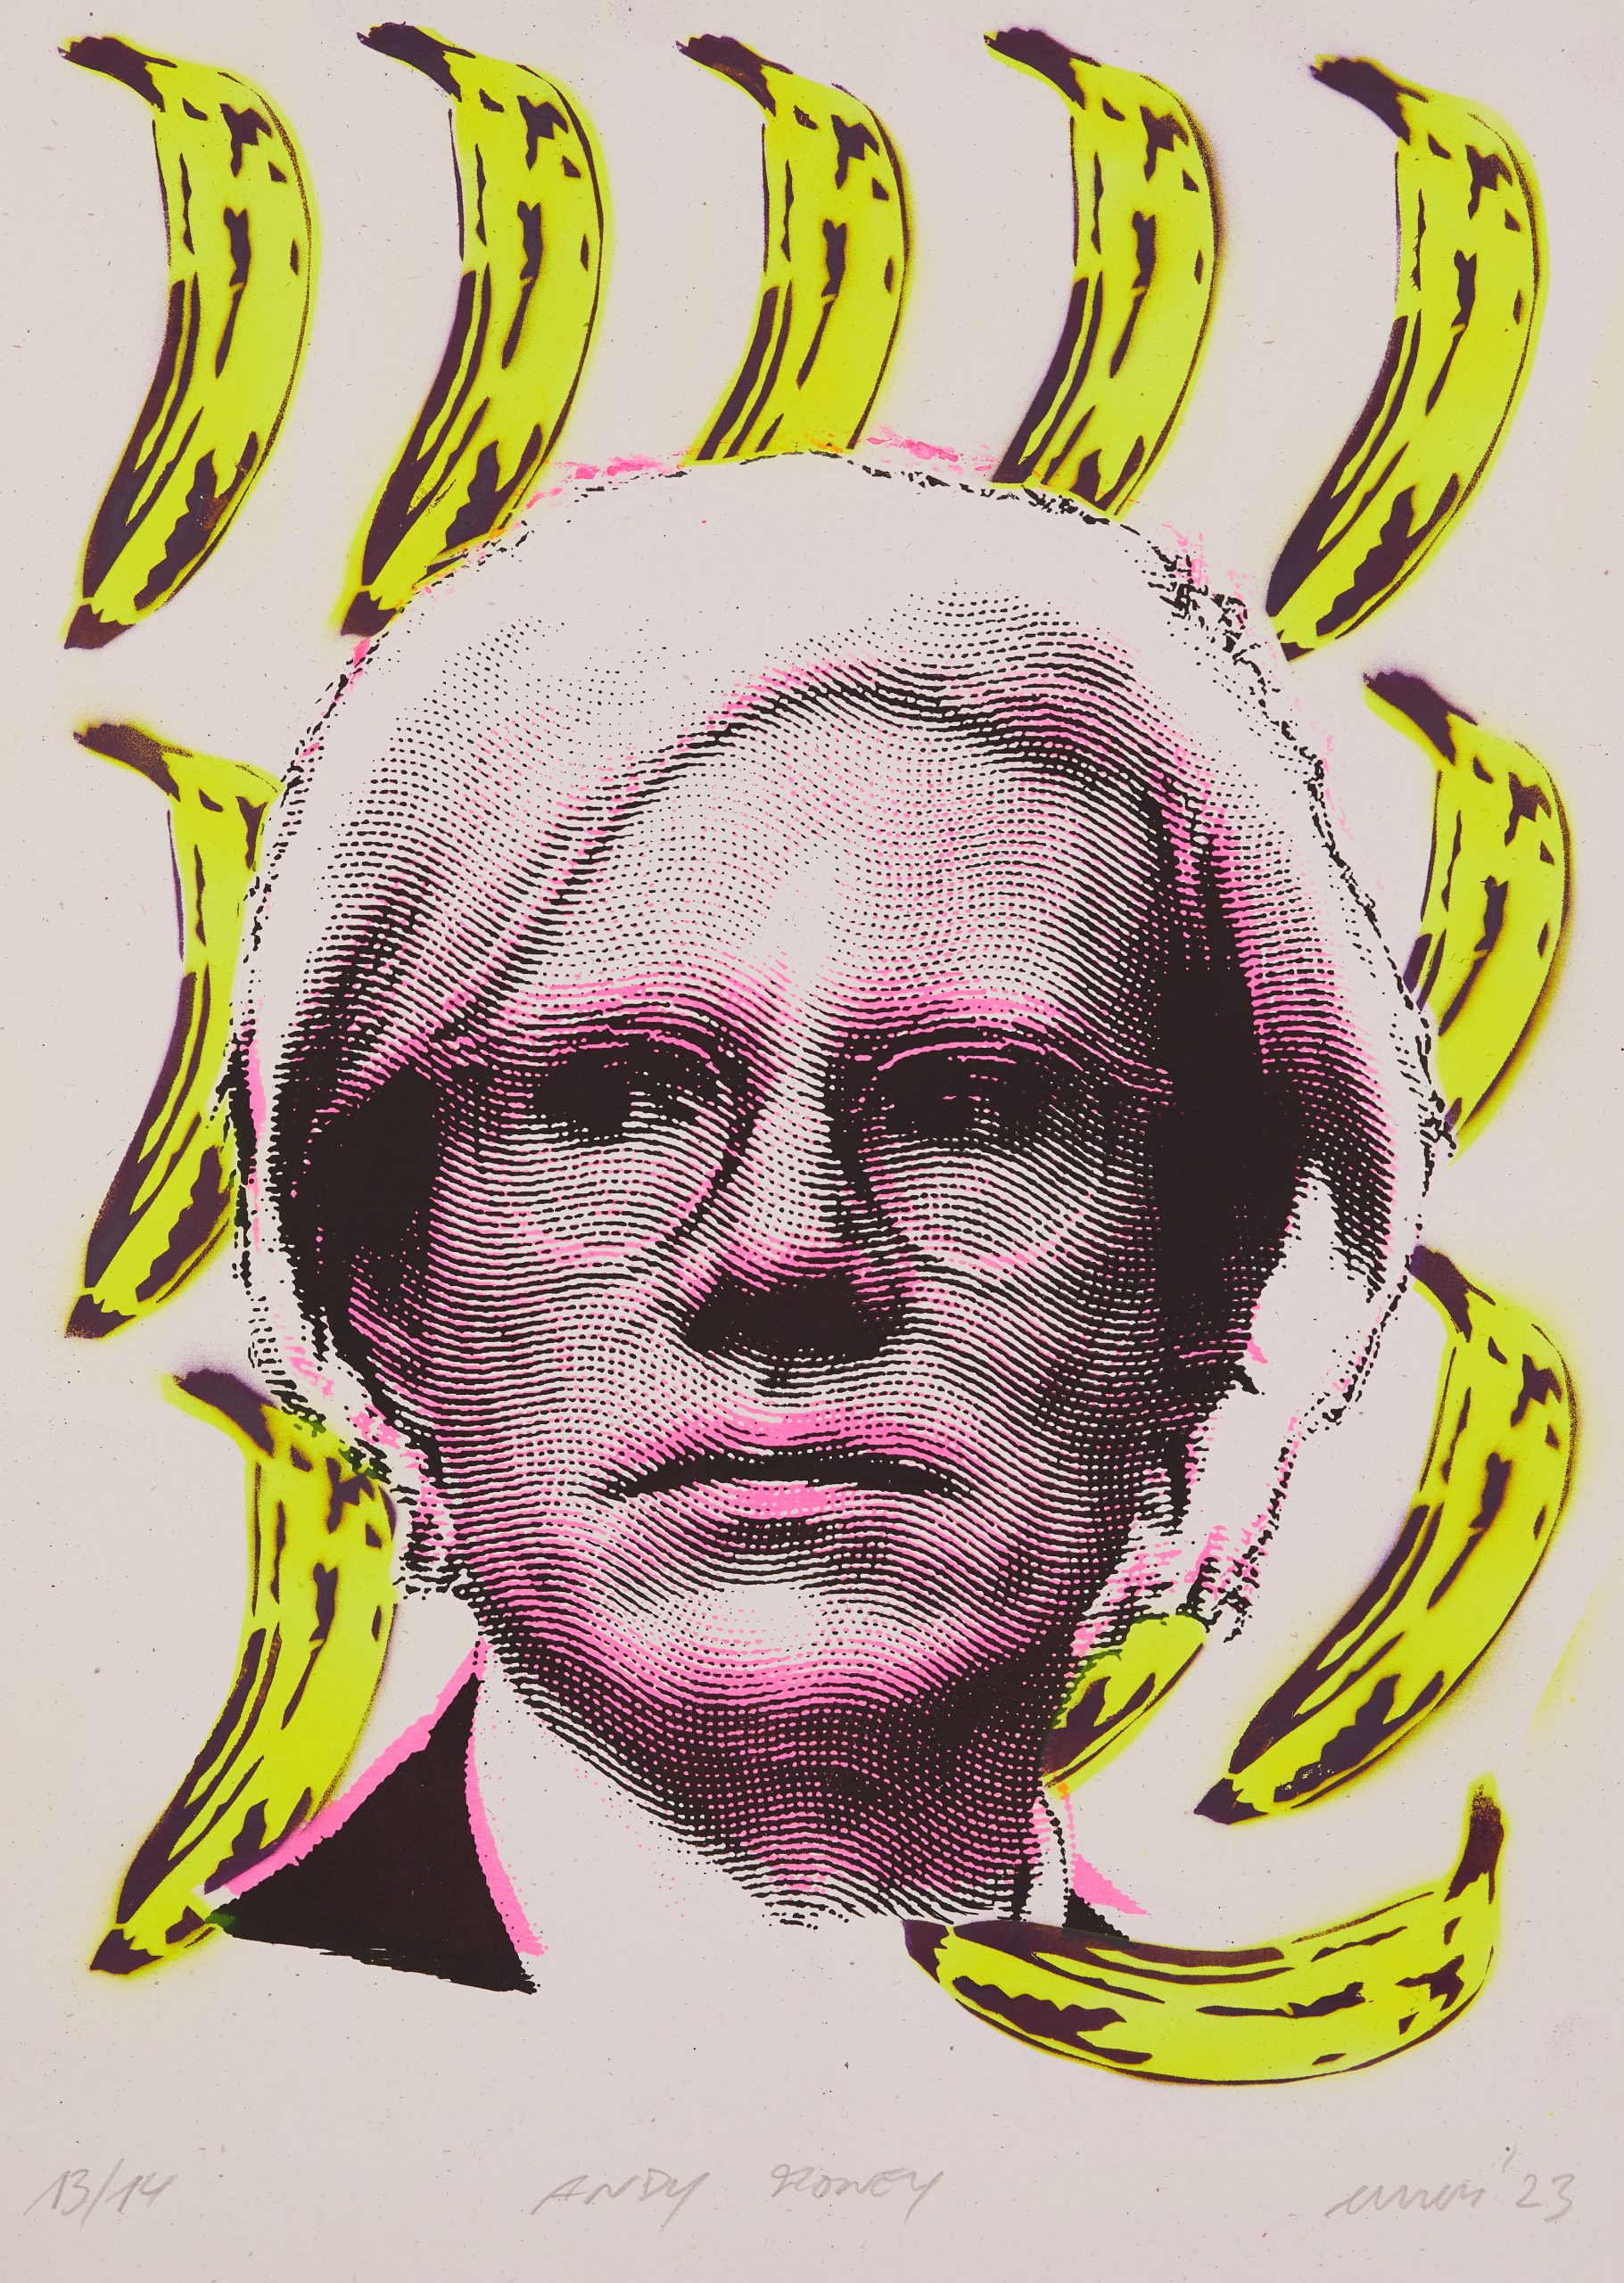 GLS-EMESS-MTM Andy Money Warhol Siebdruck & Schablone auf 320 gr recyceltem Papier, Edition: 14 serielle Unikate